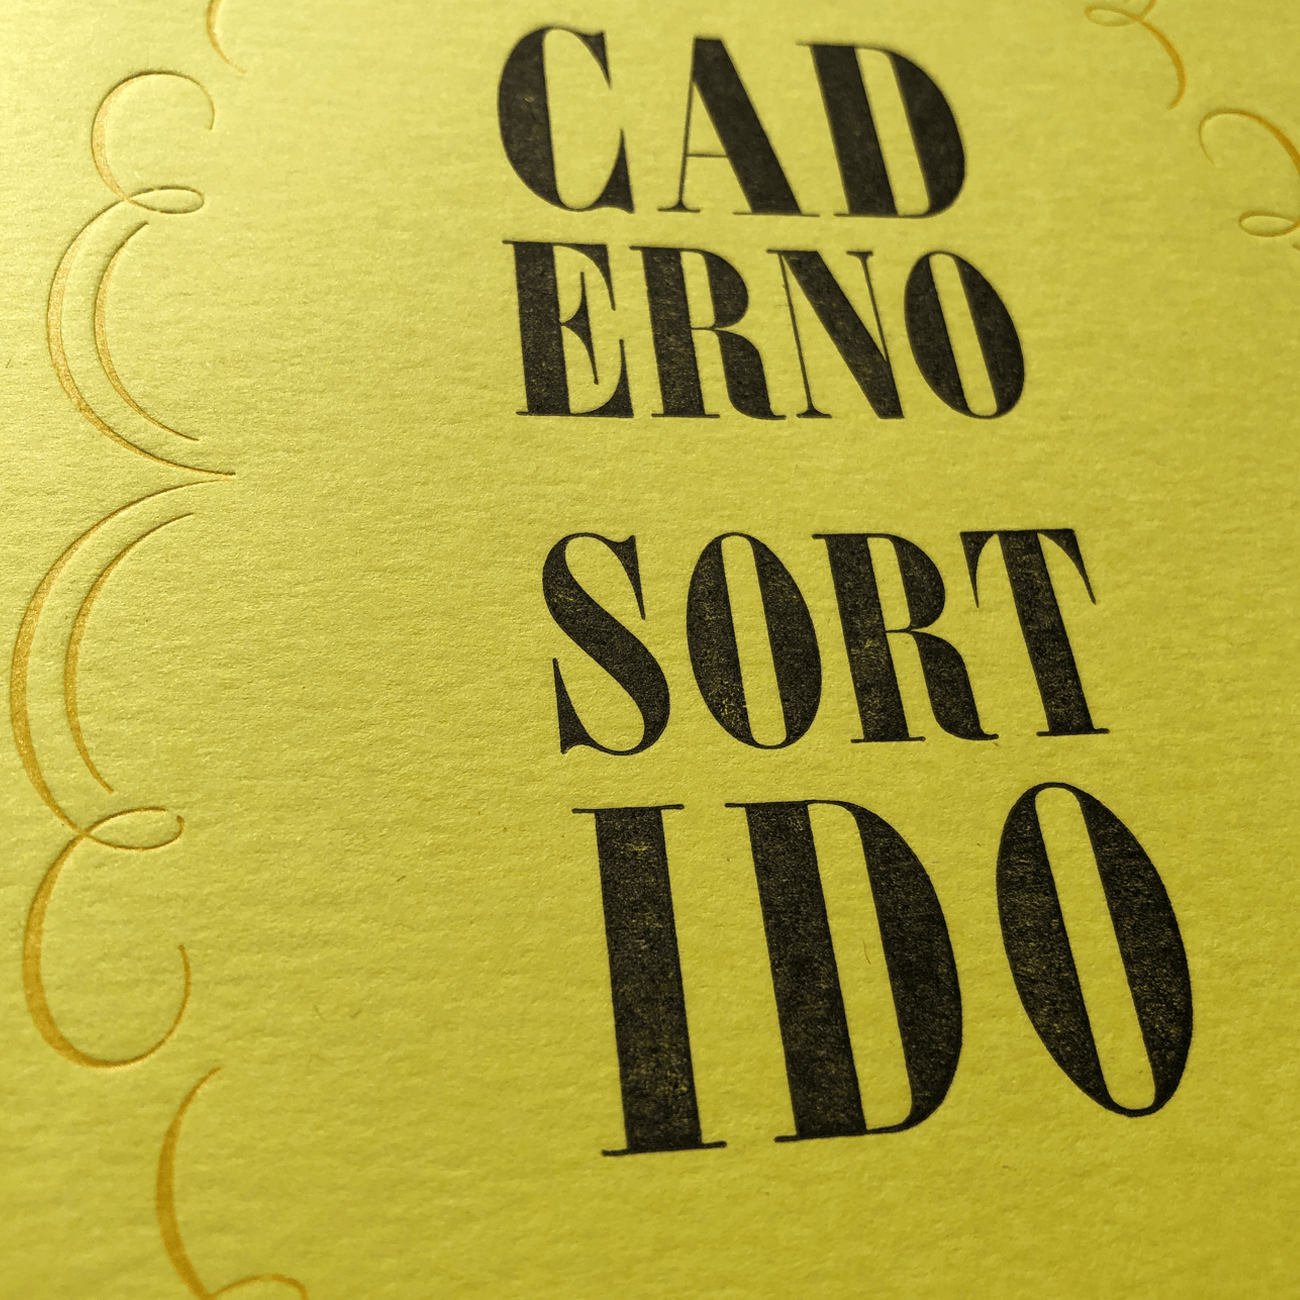 Detailansicht, Serrote, Caderno Sortido, gelb, Buchdruck,